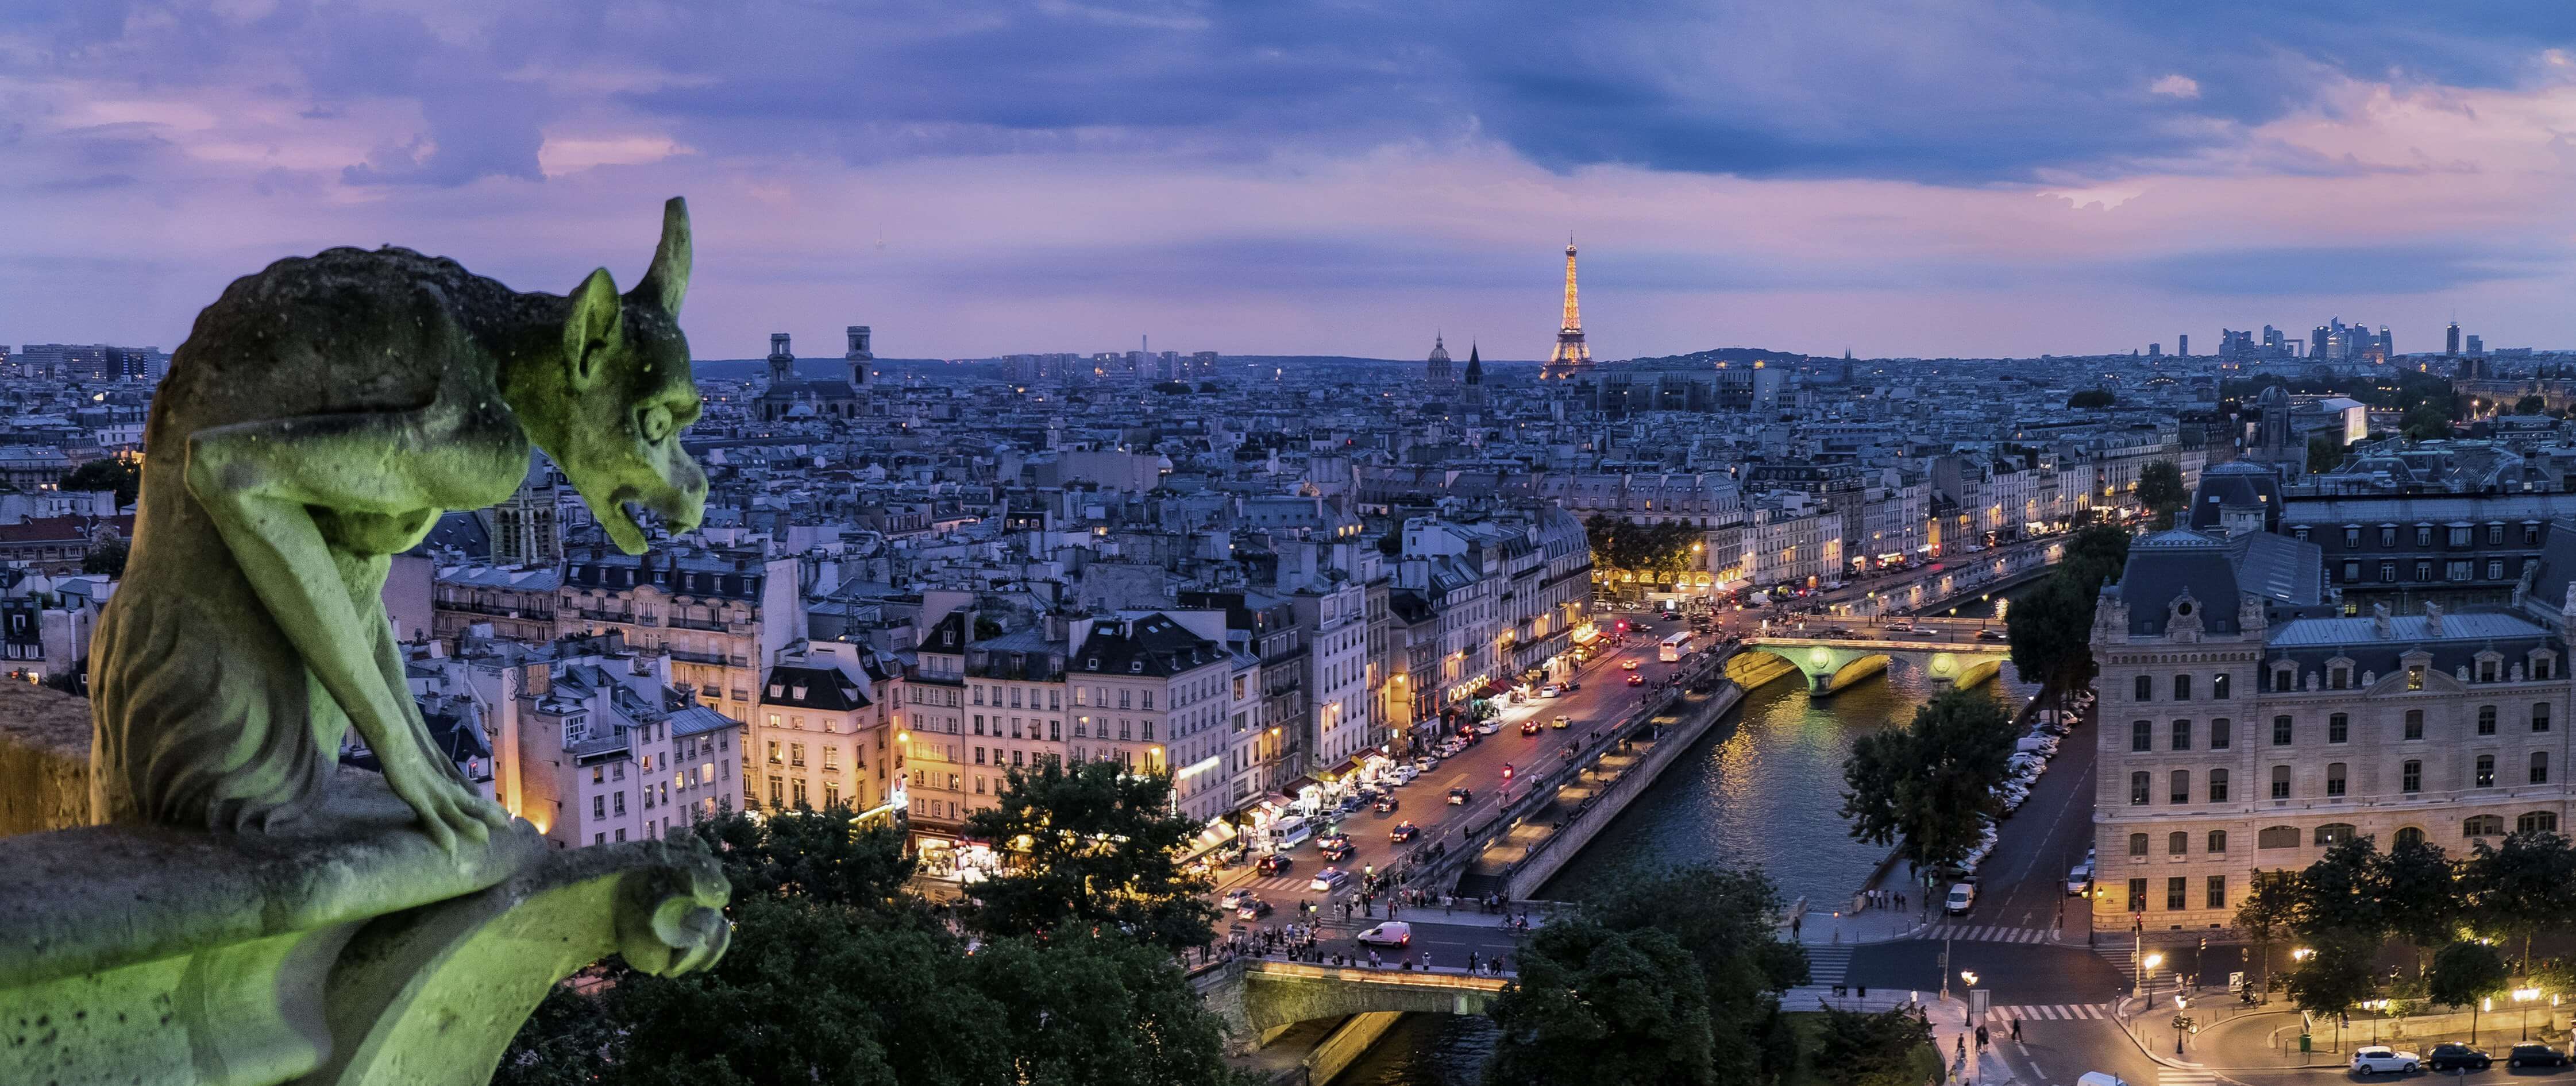 The Paris Pantry: A Guide To La Grande Épicerie, by Food Republic